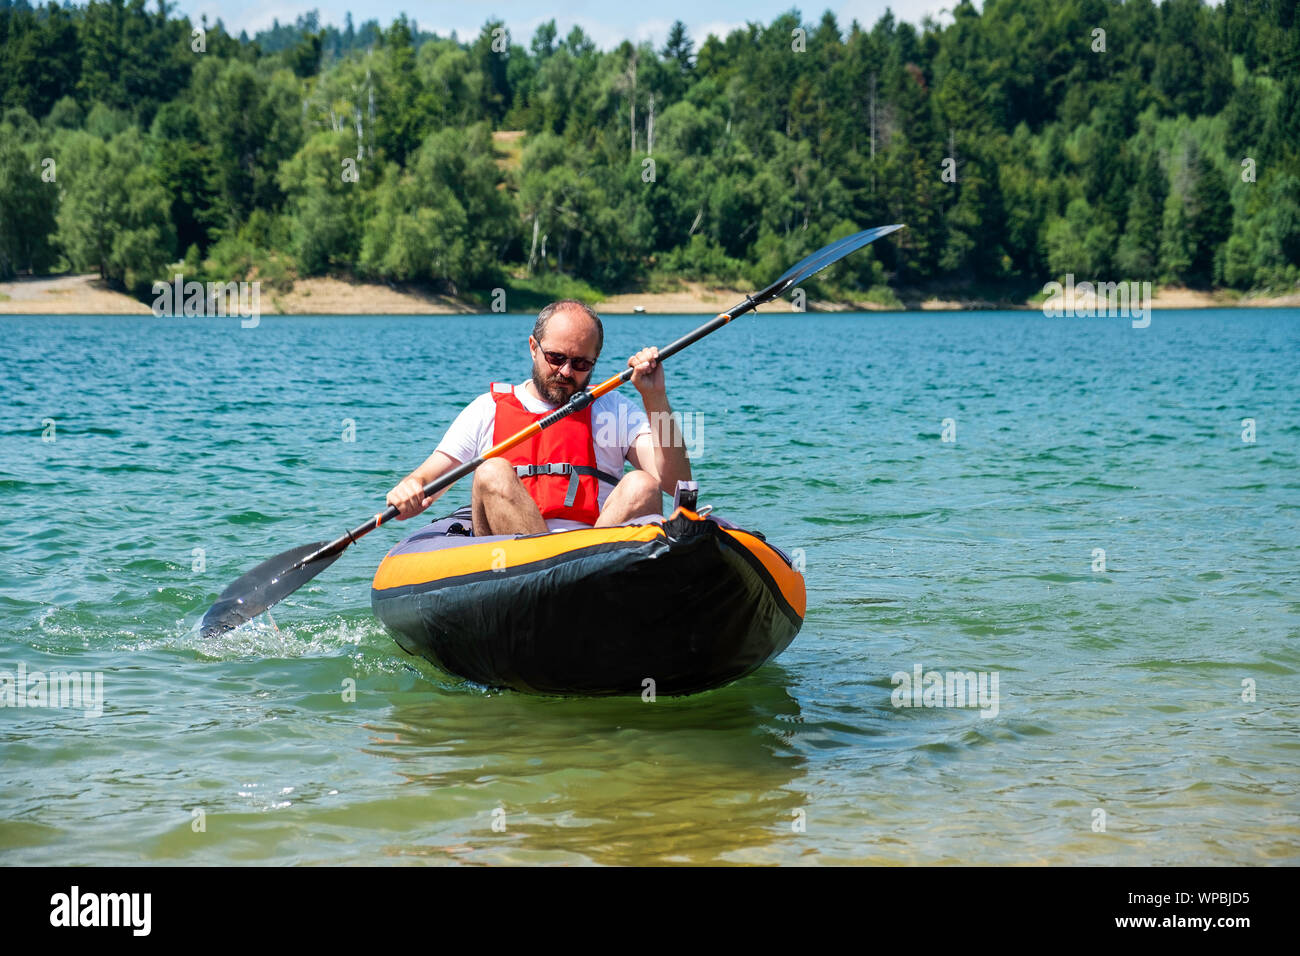 Man Paddeln in aufblasbare Kajak fahren auf dem See, in Lokve Gorski kotar,  Kroatien. Abenteuerliche Kajak Erfahrung in einer wunderschönen Natur  Stockfotografie - Alamy